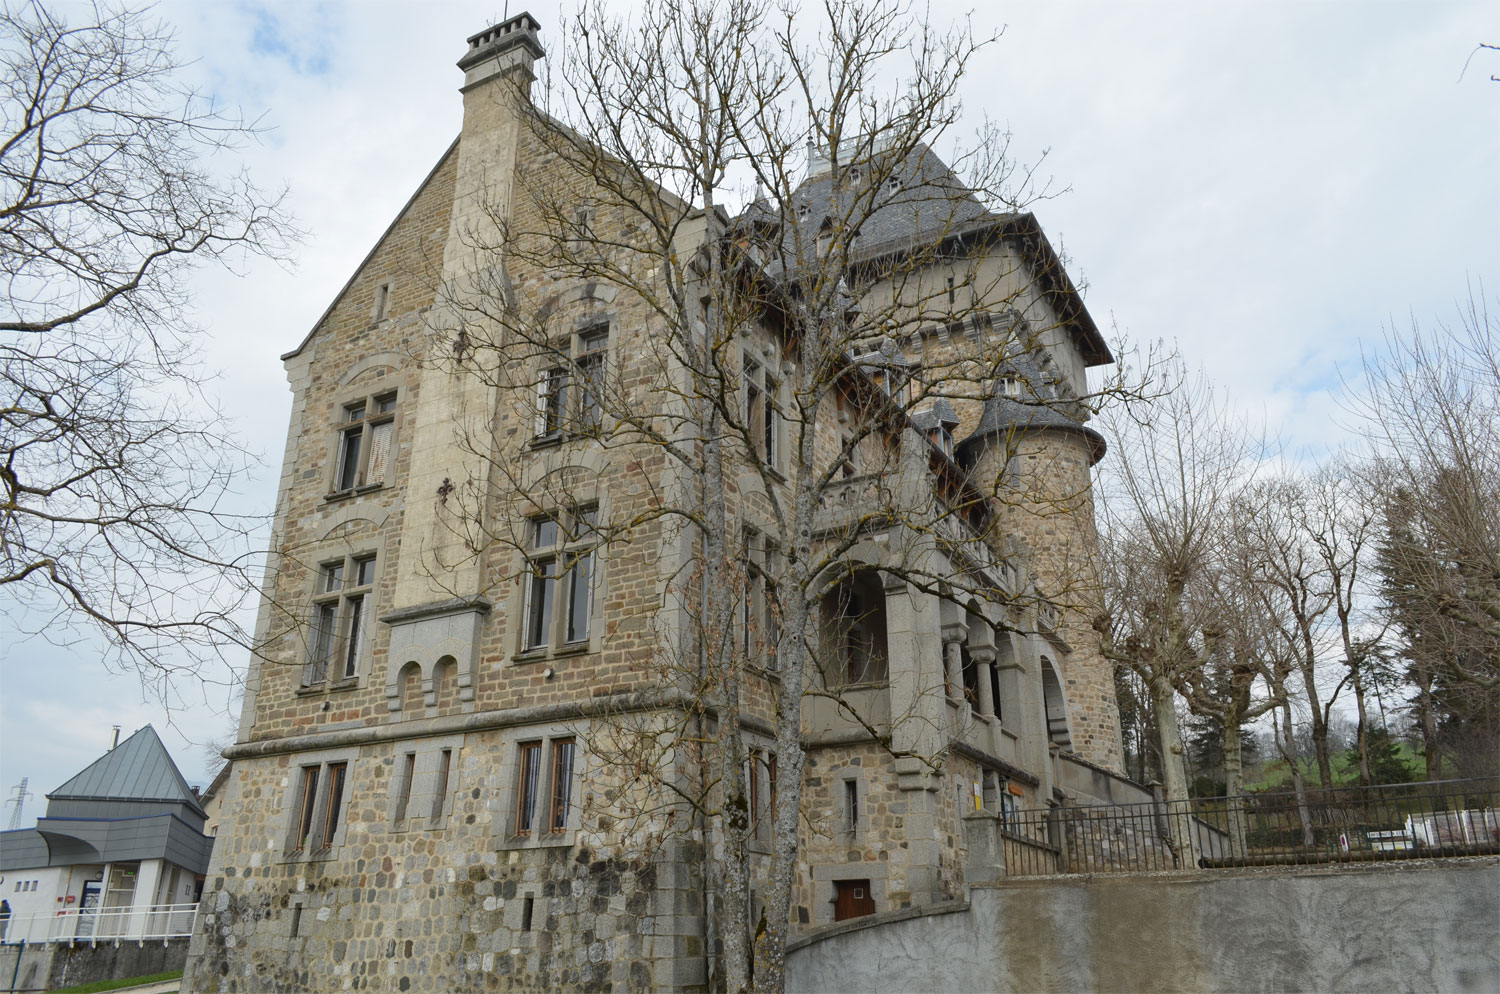 Château de villy<br />
2013